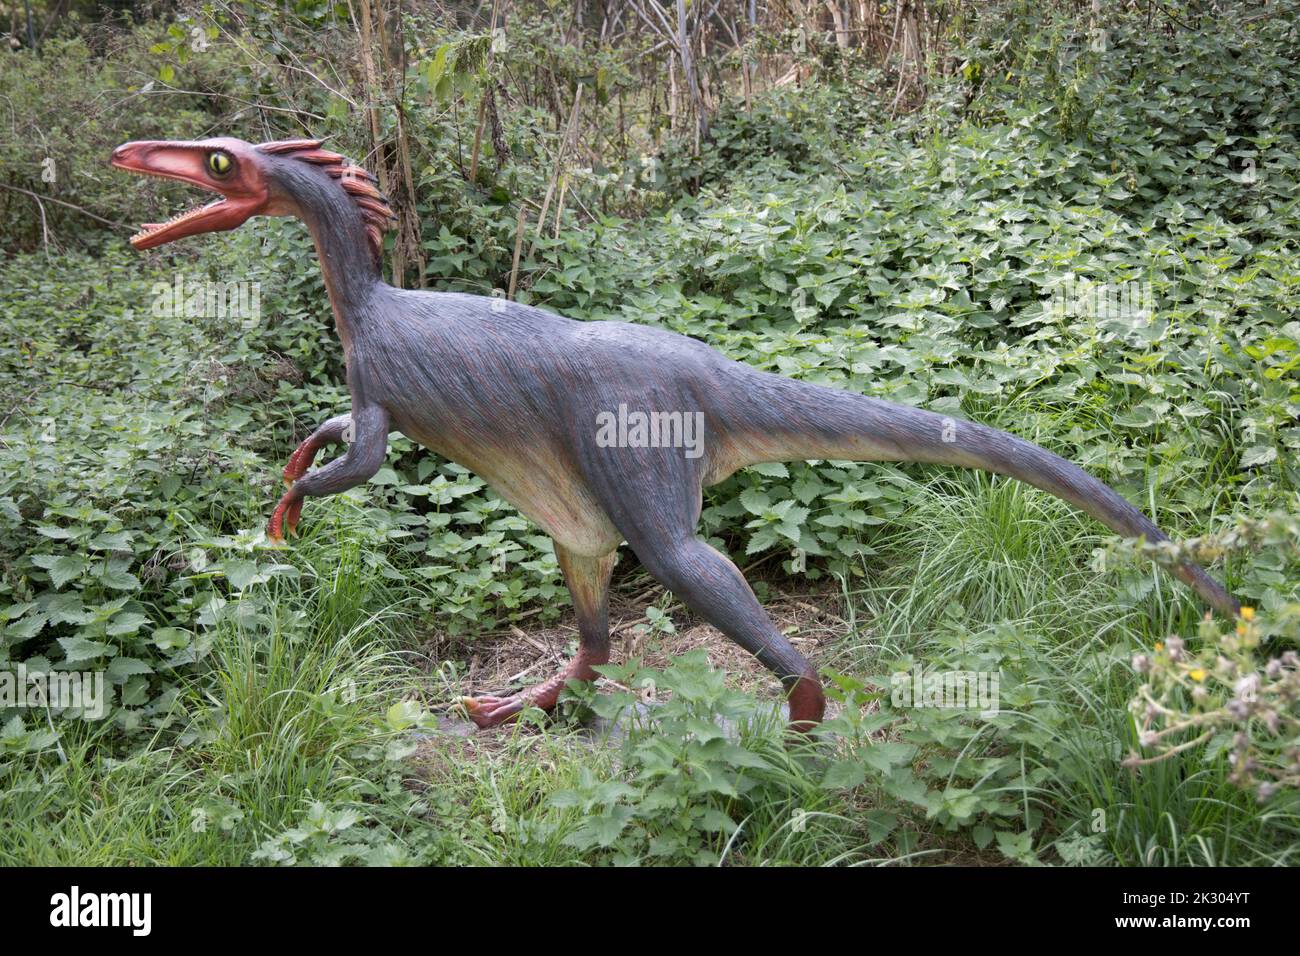 Modèle LifeSize de Trrodon un dinosaure théropode de type oiseau du Crétaceious tardif, All Things Wild, Honeybourne, Royaume-Uni Banque D'Images